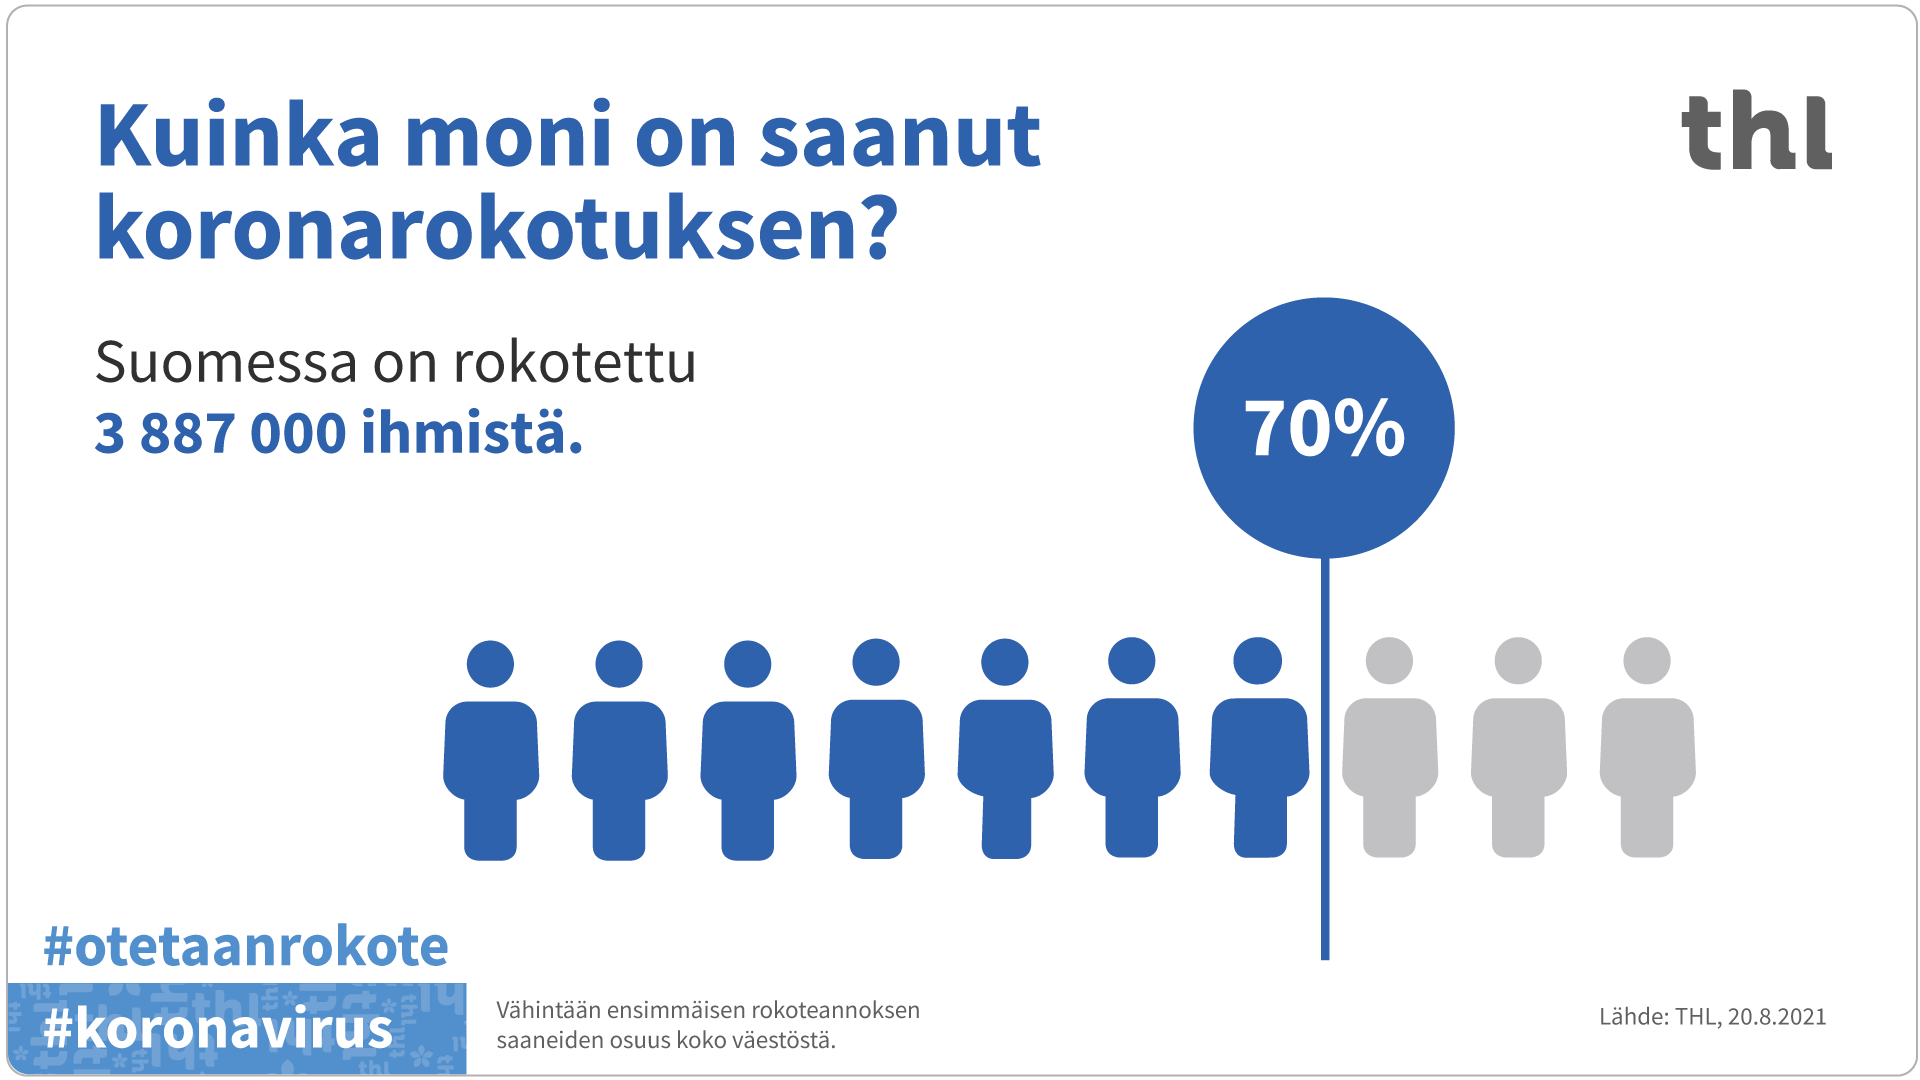 Suomessa on rokotettu koronaa vastaan 3887000 ihmistä. 70 prosenttia koko väestöstä on saanut vähintään yhden koronarokoteannoksen.